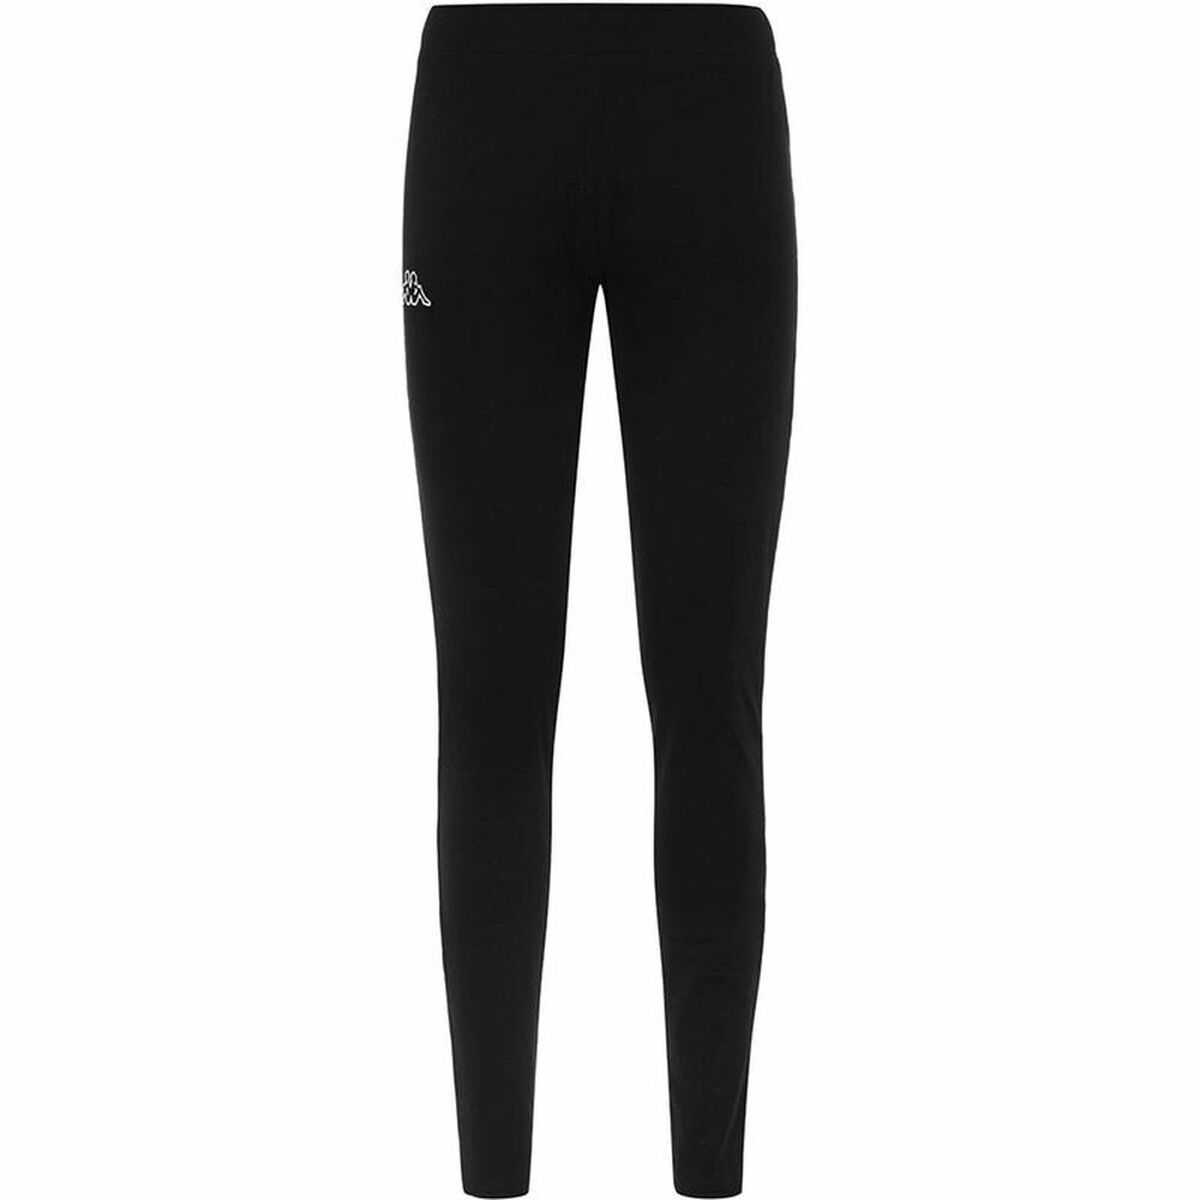 Sport leggings for Women Kappa Black